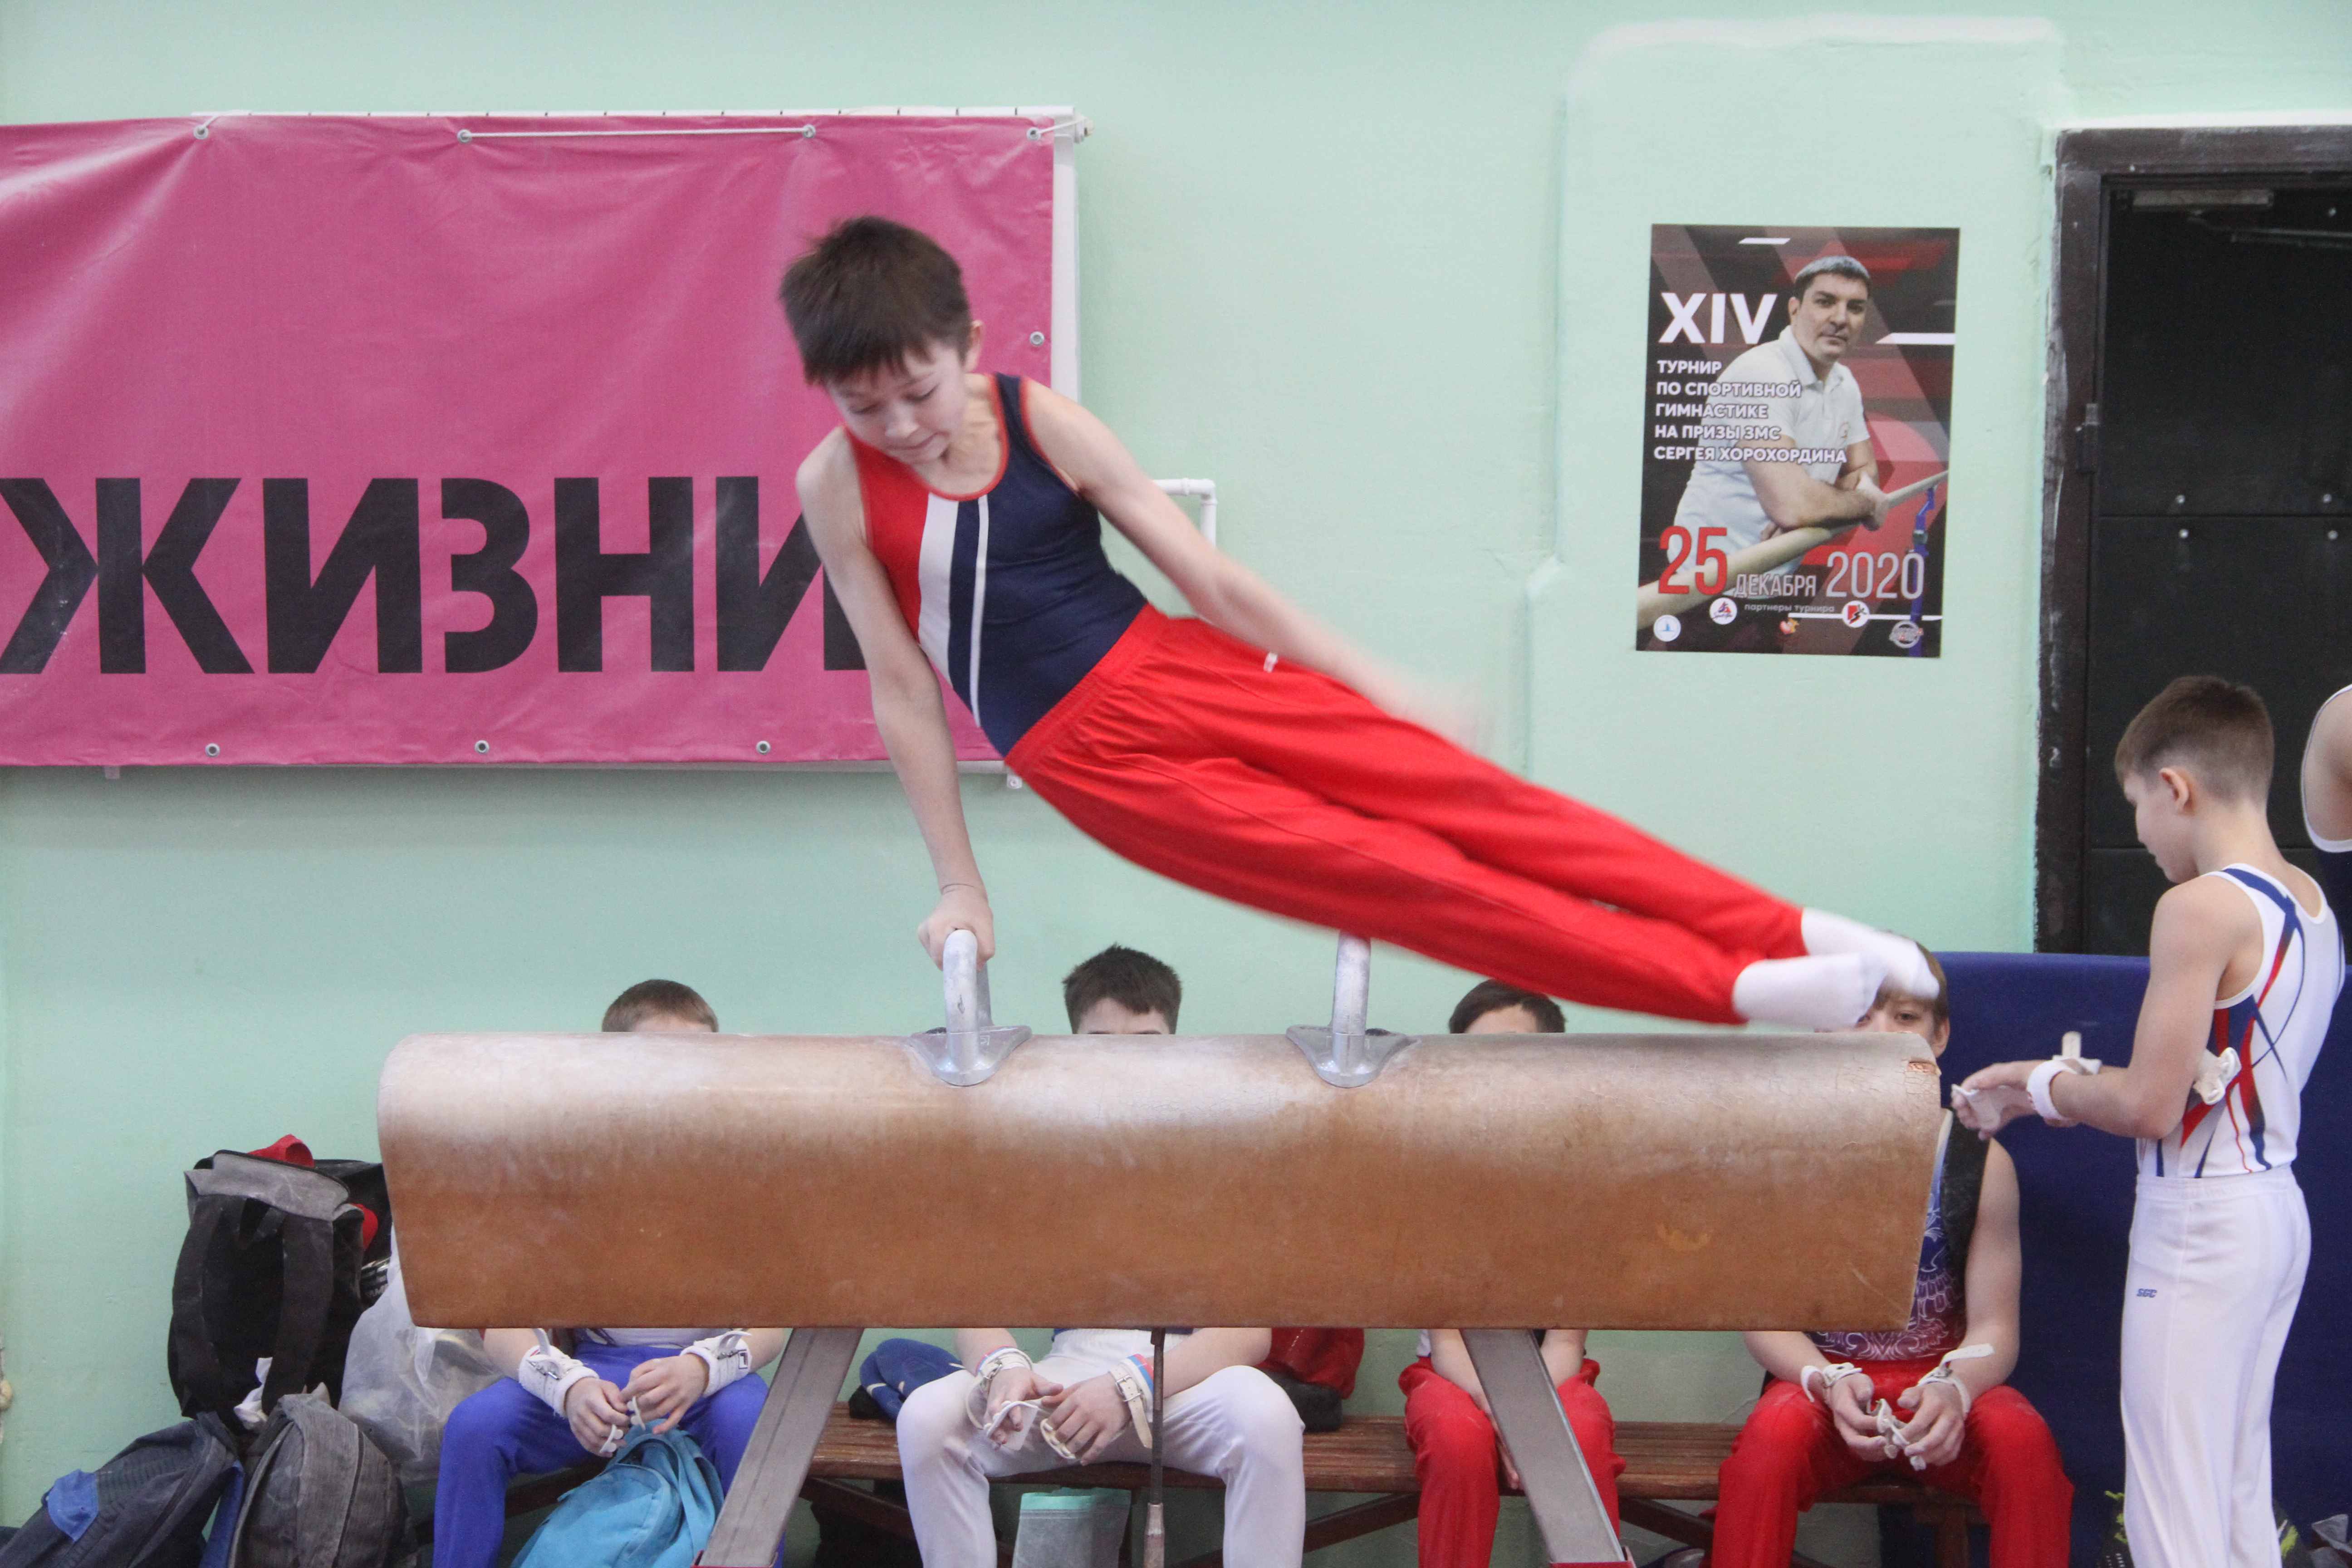 Традиционный турнир Хорохордина в Барнауле украсило противостояние гимнастов сборной России